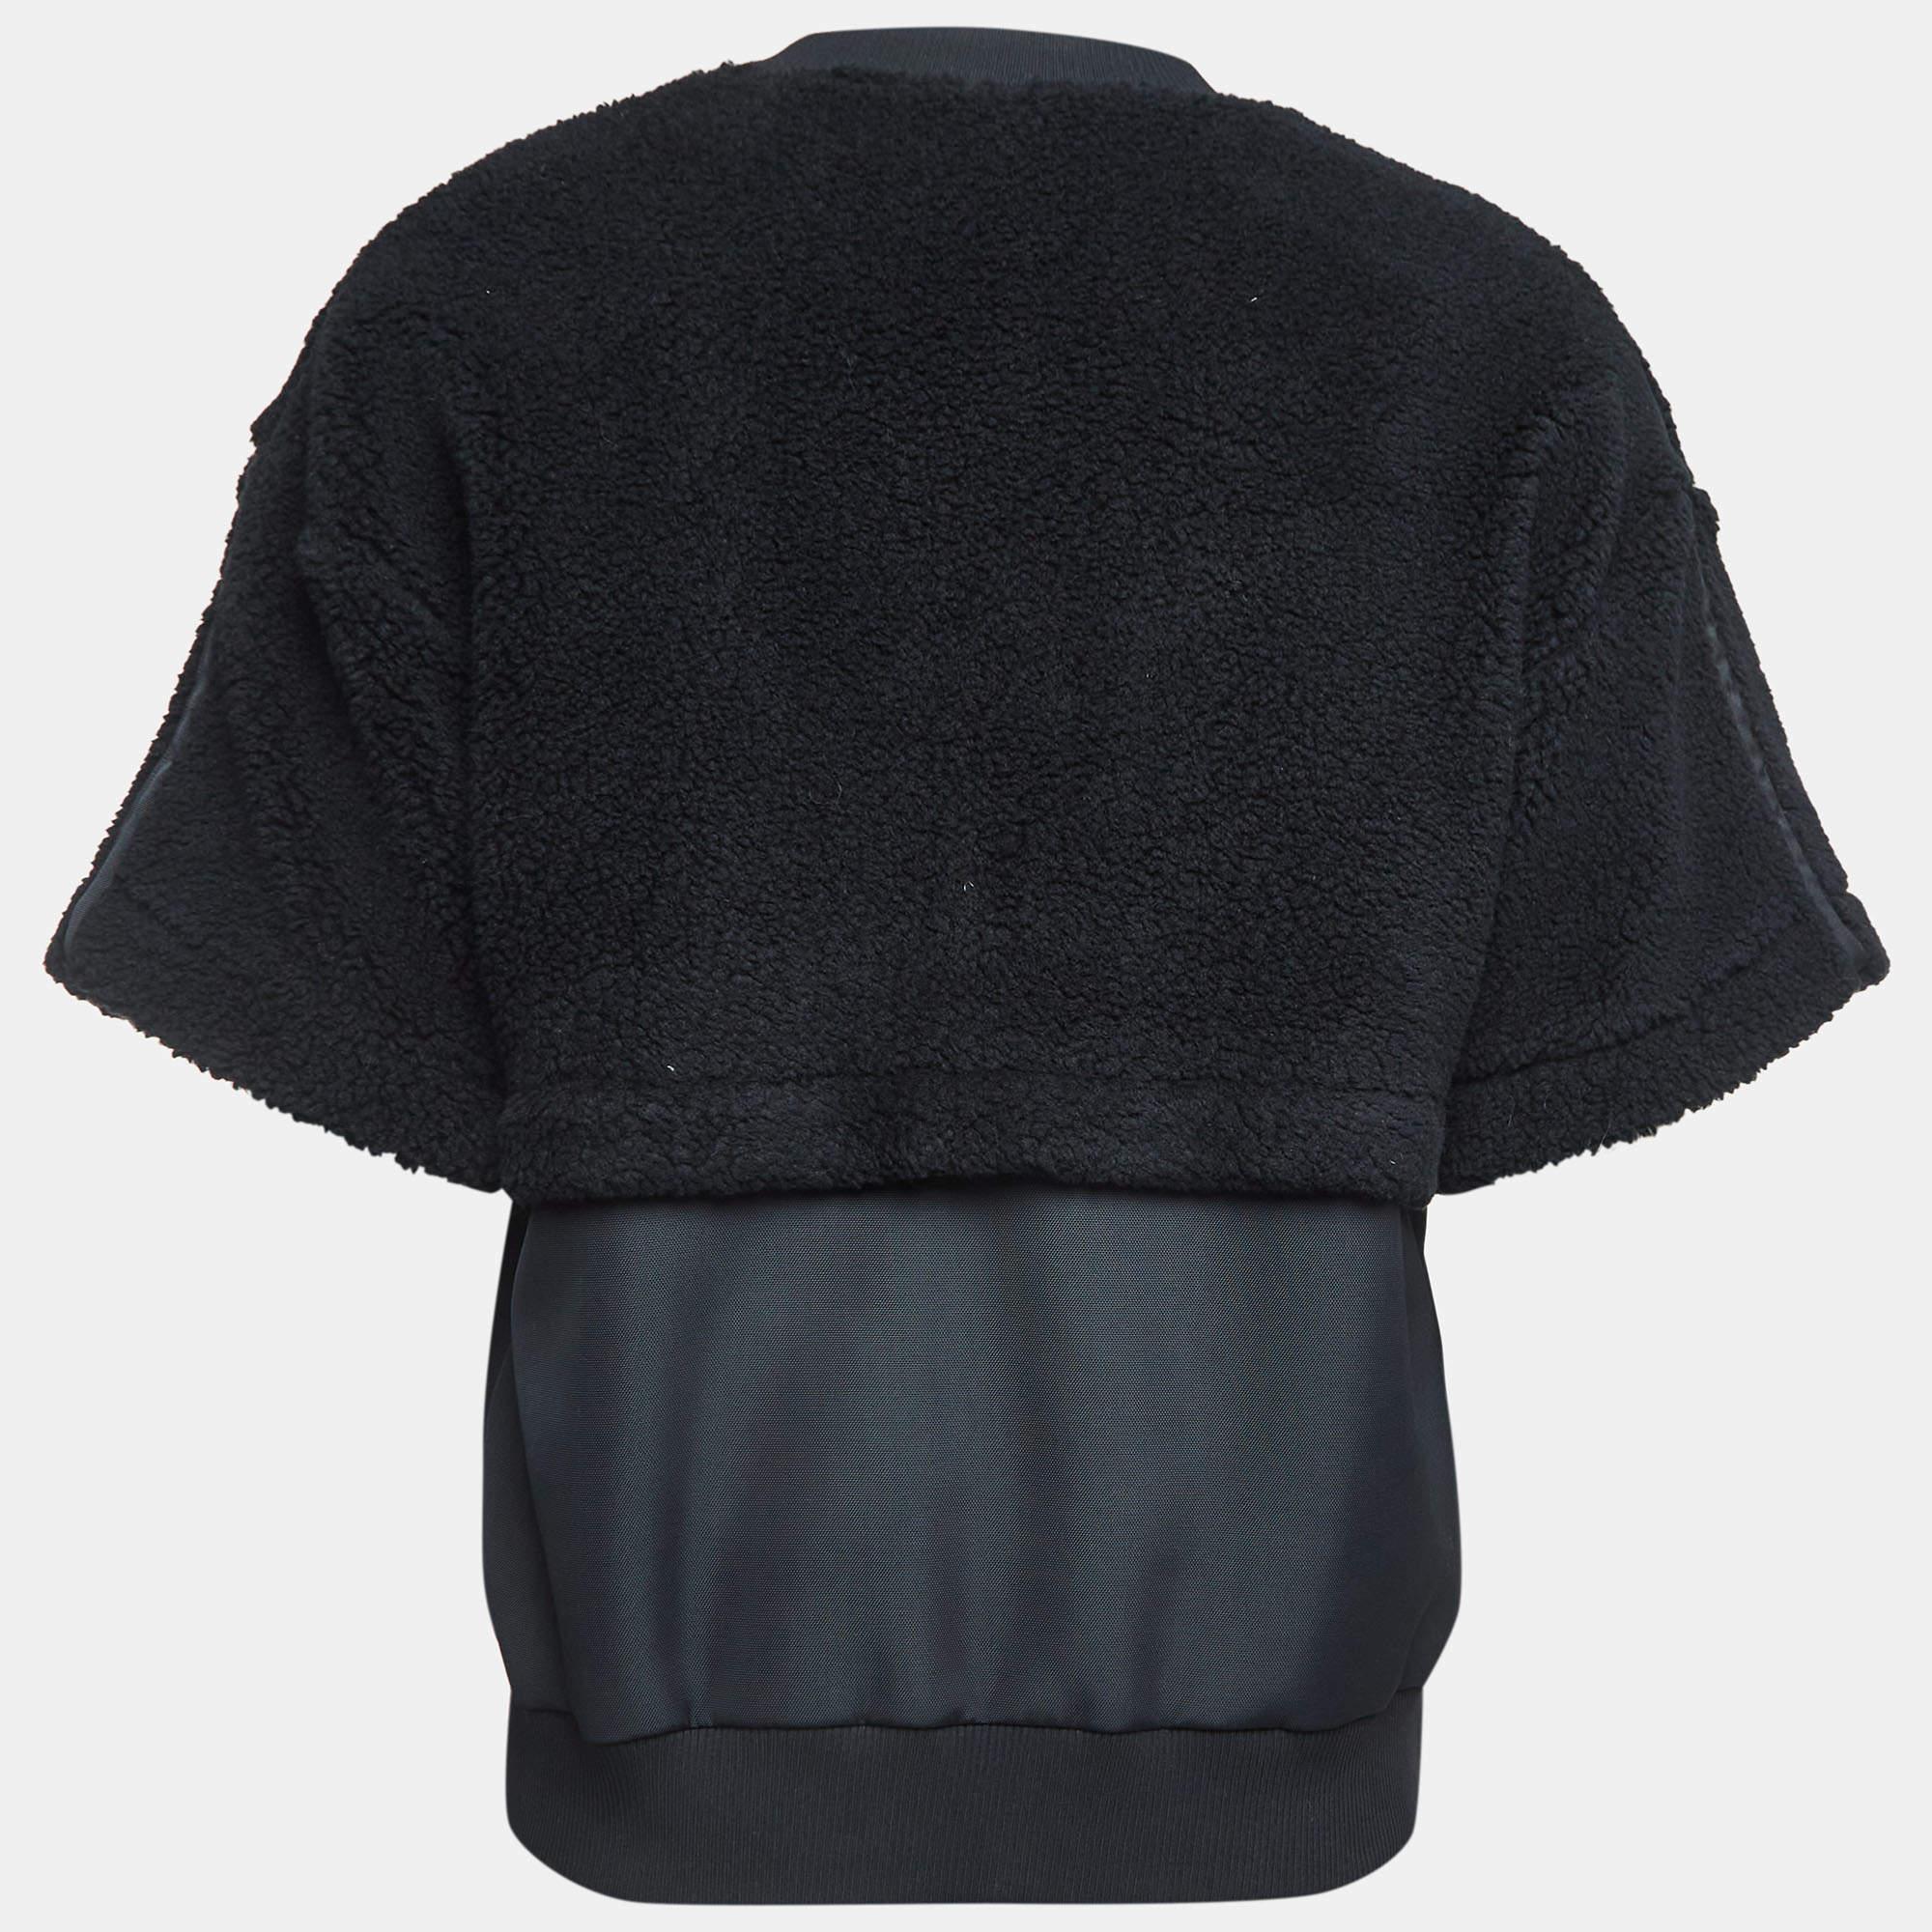 Erleben Sie unvergleichlichen Komfort und Raffinesse mit dem Pullover von Fendi. Dieser aus plüschigem Shearling gefertigte Pullover strahlt raffinierten Stil aus. Der schlichte Rundhalsausschnitt wird durch exquisite Taschendetails aufgewertet und